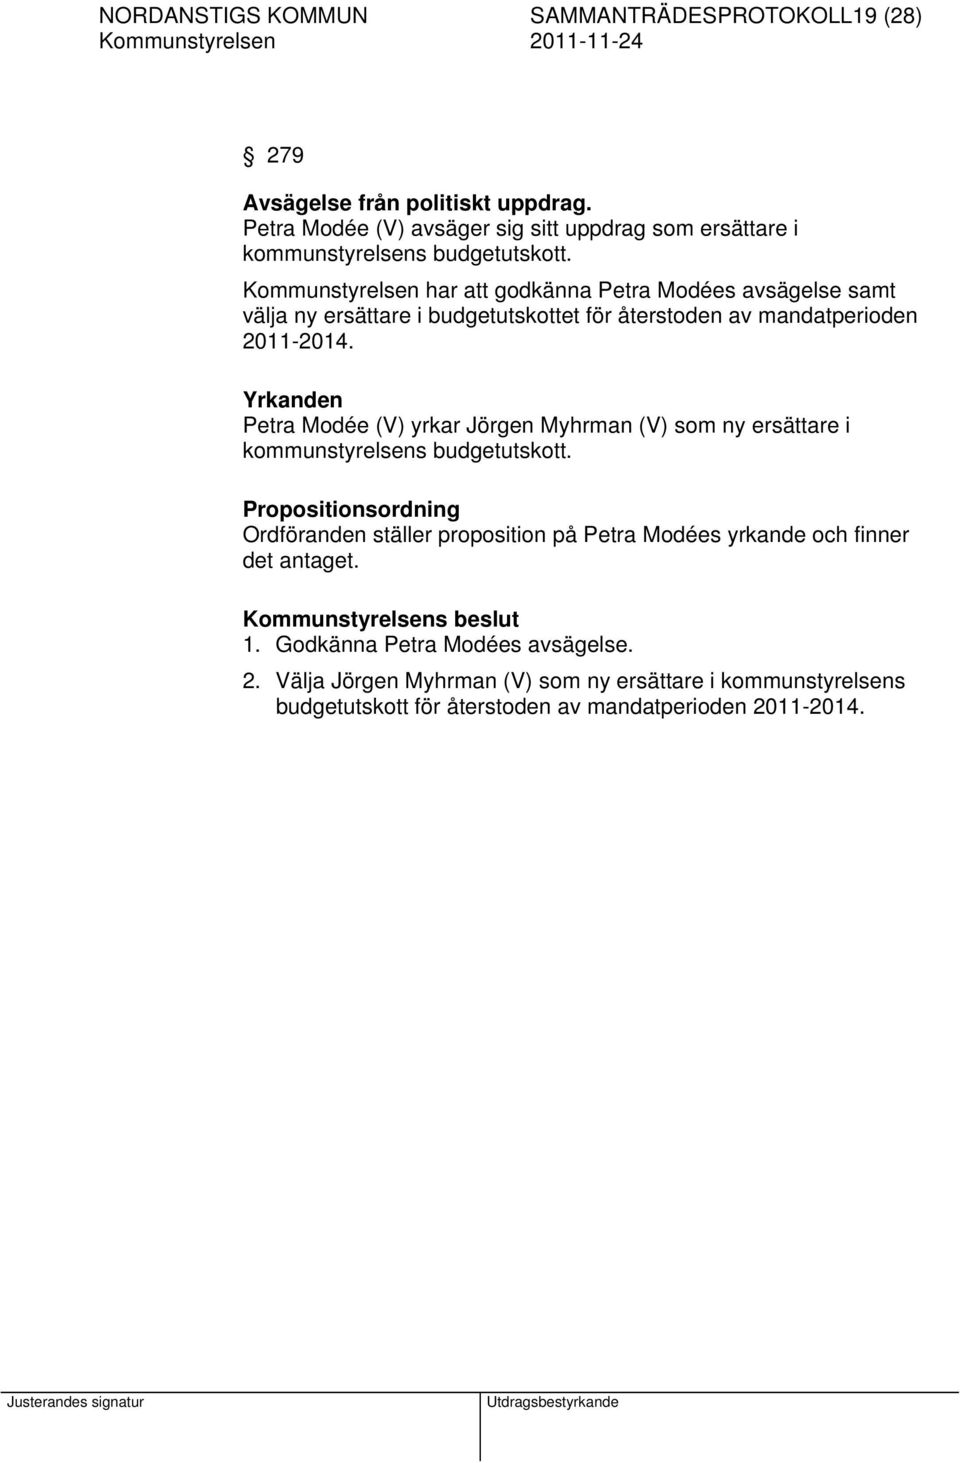 Kommunstyrelsen har att godkänna Petra Modées avsägelse samt välja ny ersättare i budgetutskottet för återstoden av mandatperioden 2011-2014.